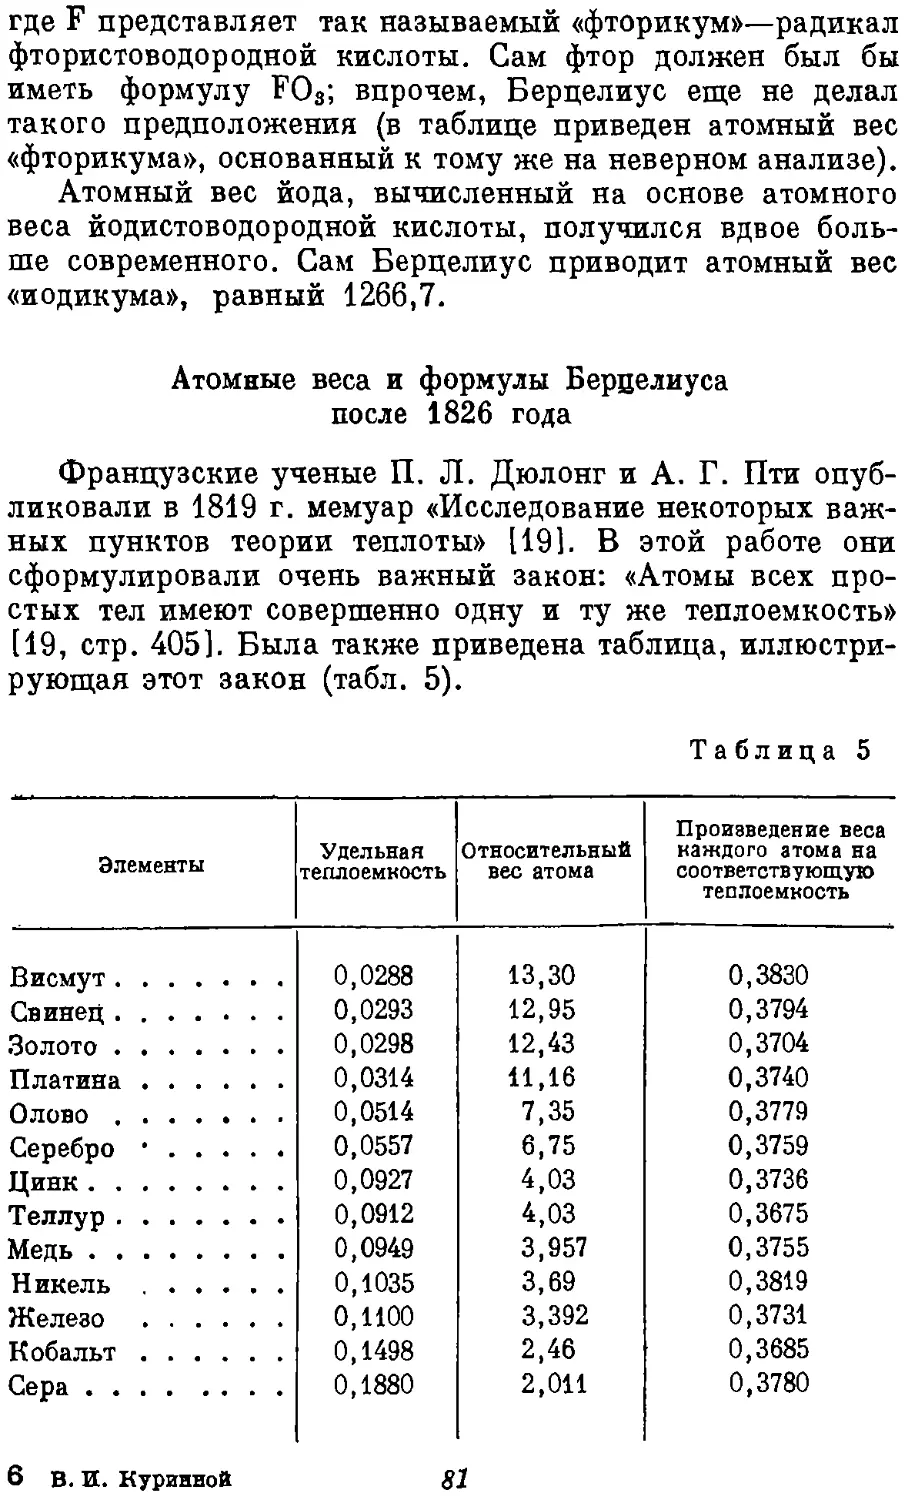 {082} Атомные веса и формулы Берцелиуса после 1826 года